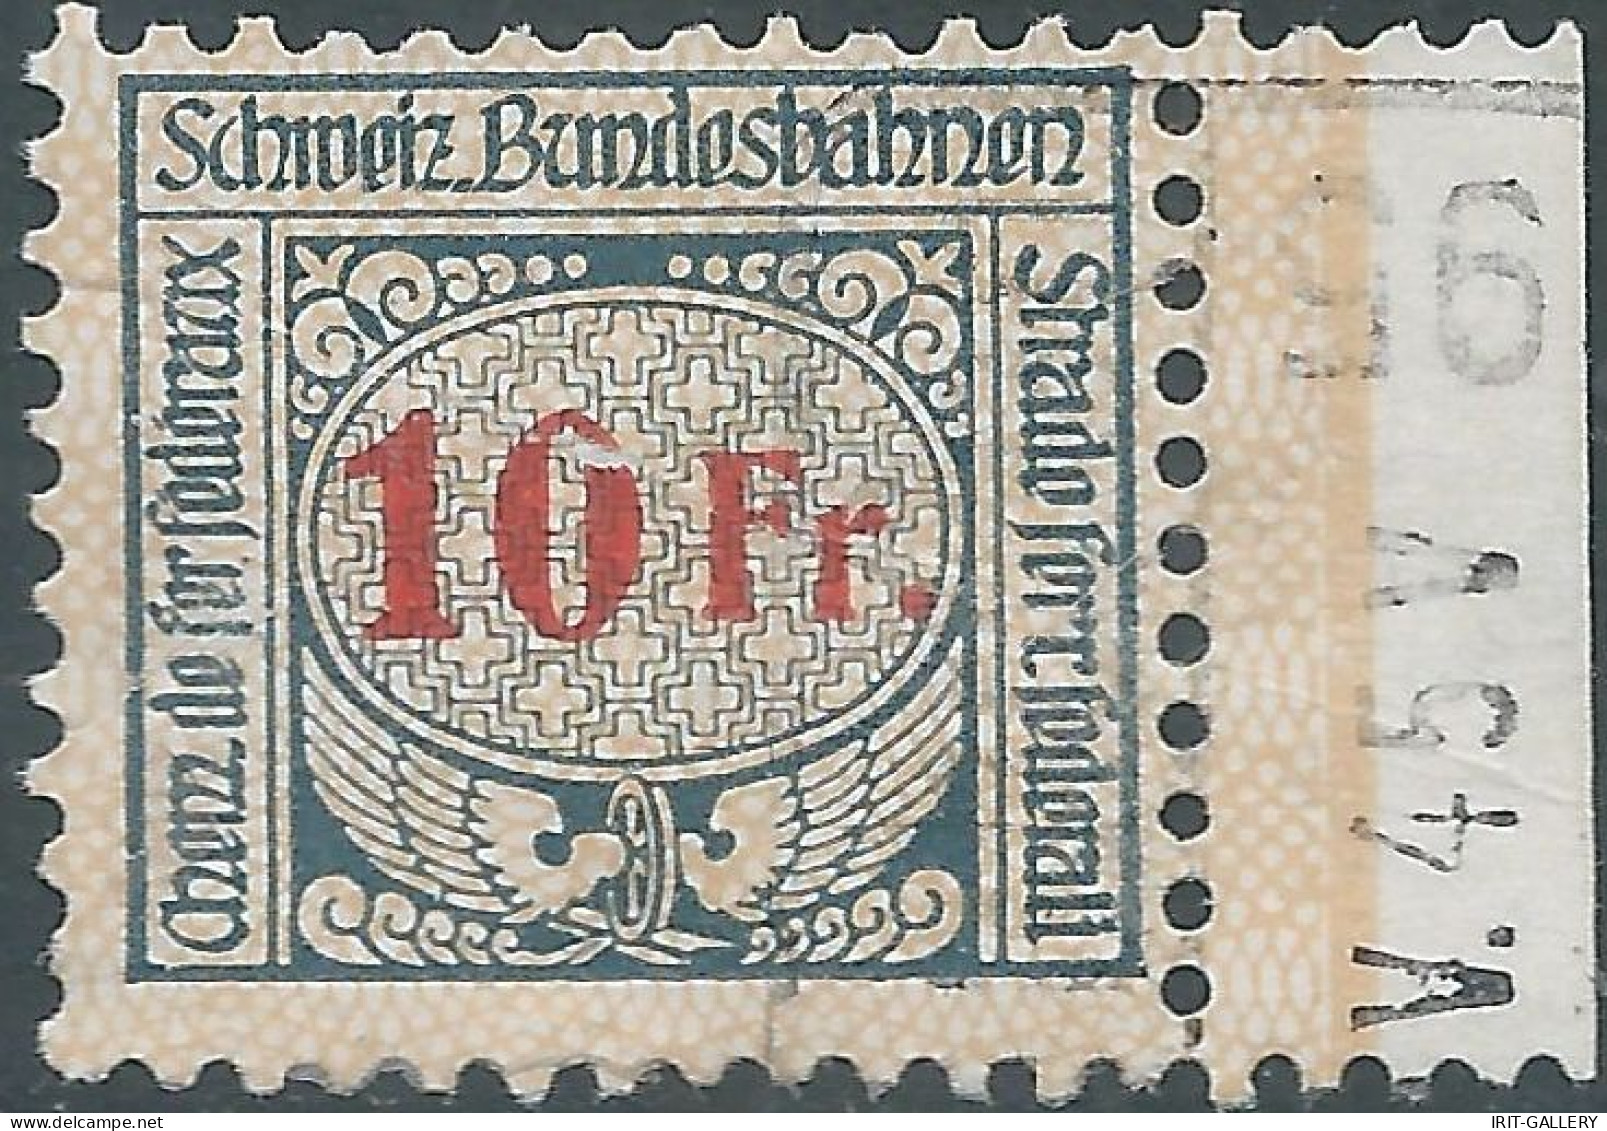 Svizzera-Switzerland-Suisse,1920/25 Revenue Stamp Tax Fiscal 10fr,SCHWEIZ.BUNDESBAHNEN-SWISS.FEDERAL RAILWAYS,Defective! - Railway